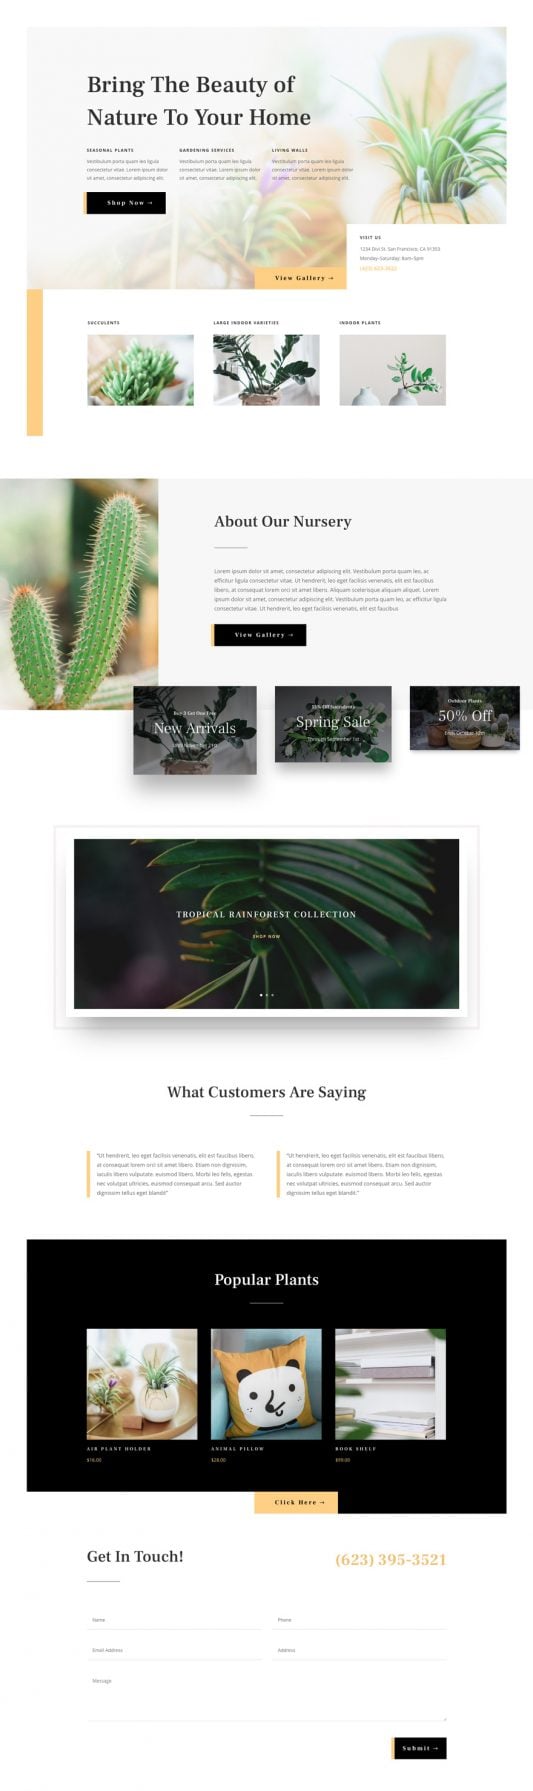 Garden Center Web Design Design Example